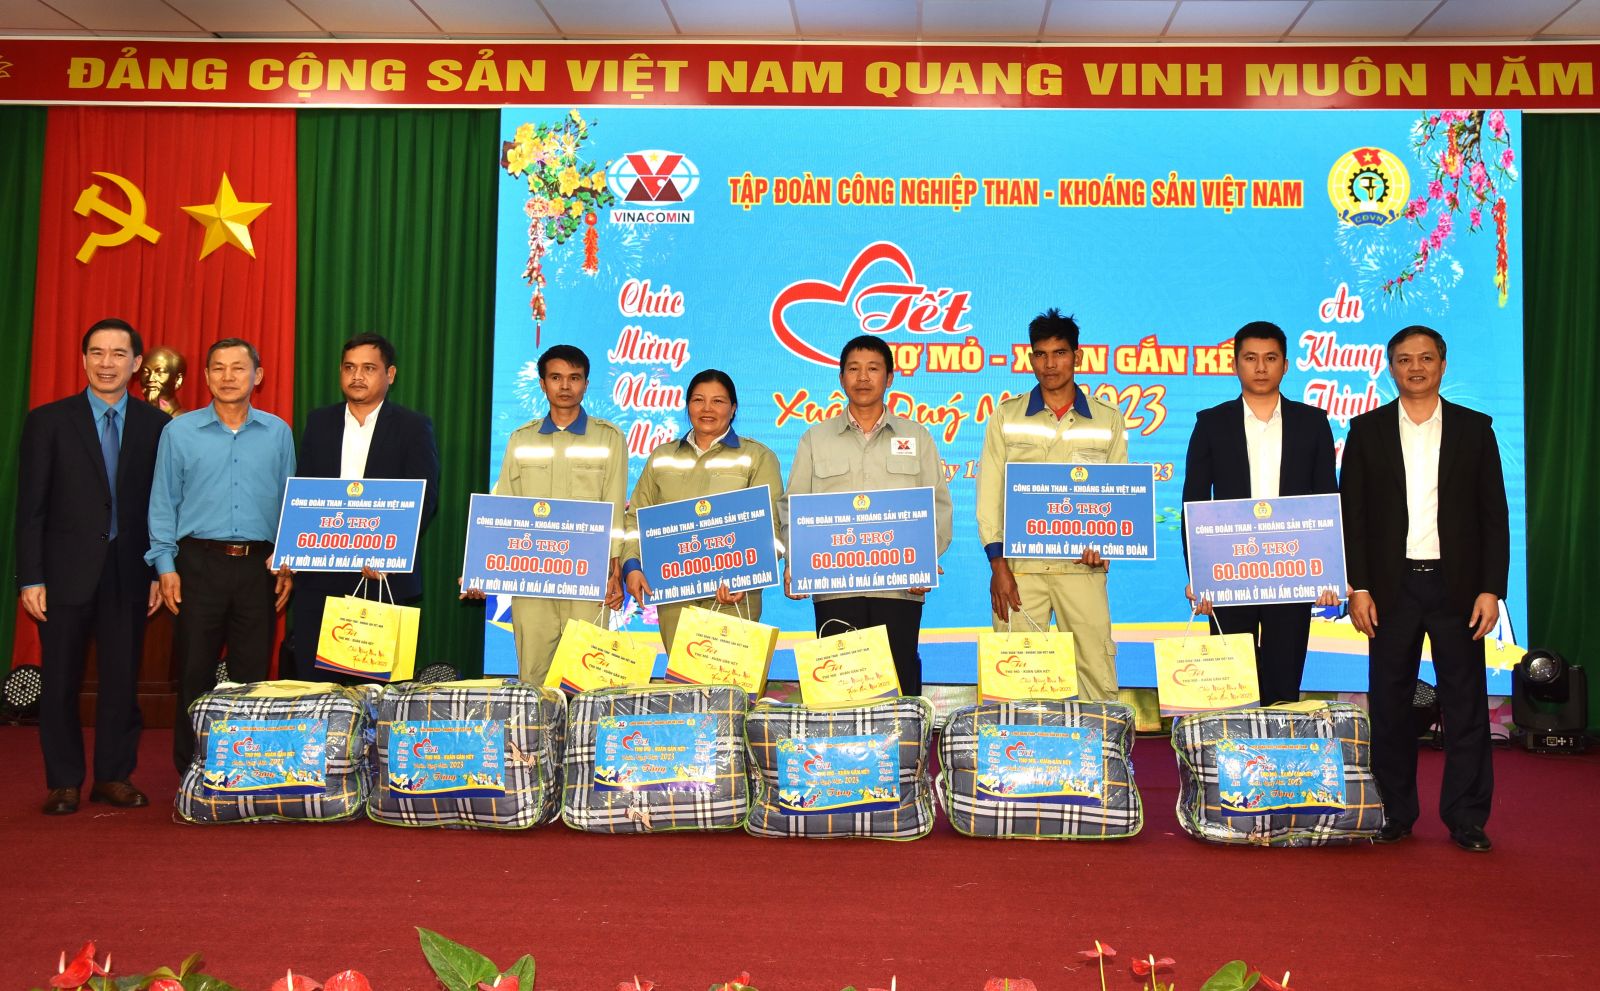 Công ty Nhôm Đắk Nông - TKV đã đăng cai tổ chức Tết thợ mỏ - Xuân gắn kết vùng Tây Nguyên Xuân Quý Mão 2023